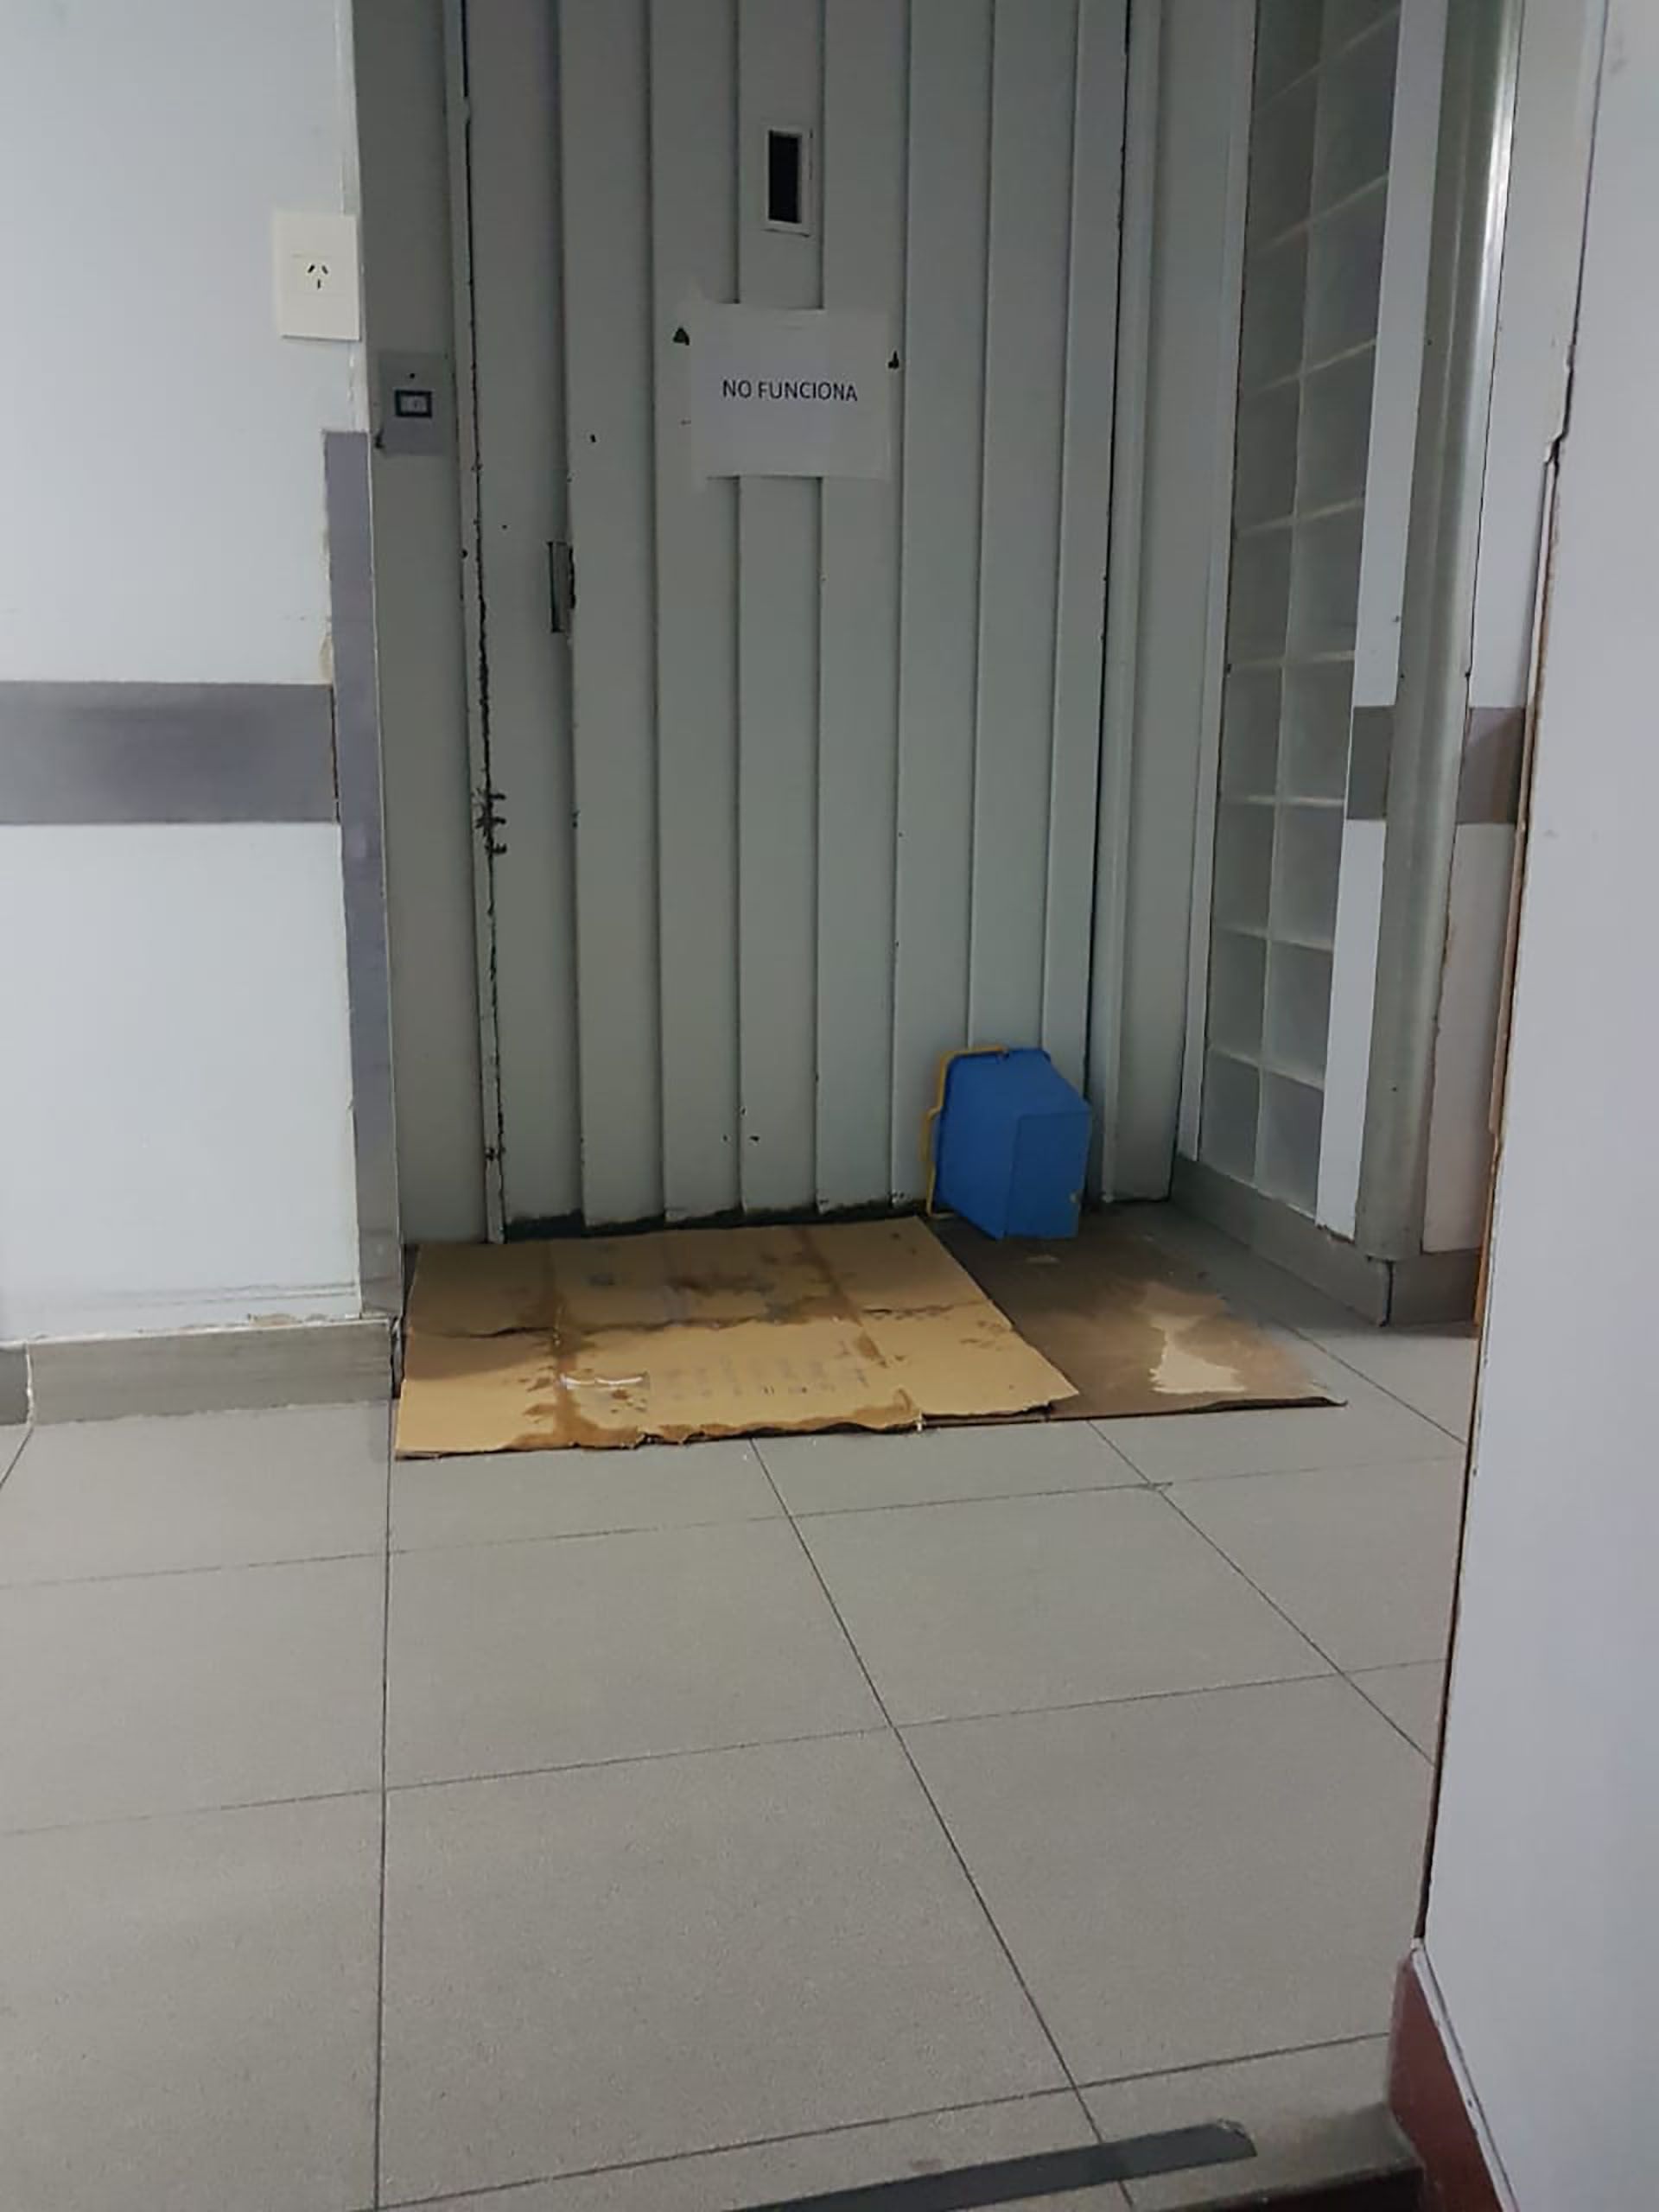 Puerta del ascensor fuera de funcionamiento en la Clínica de Salud Norte (foto Facebook Andrea Abión)